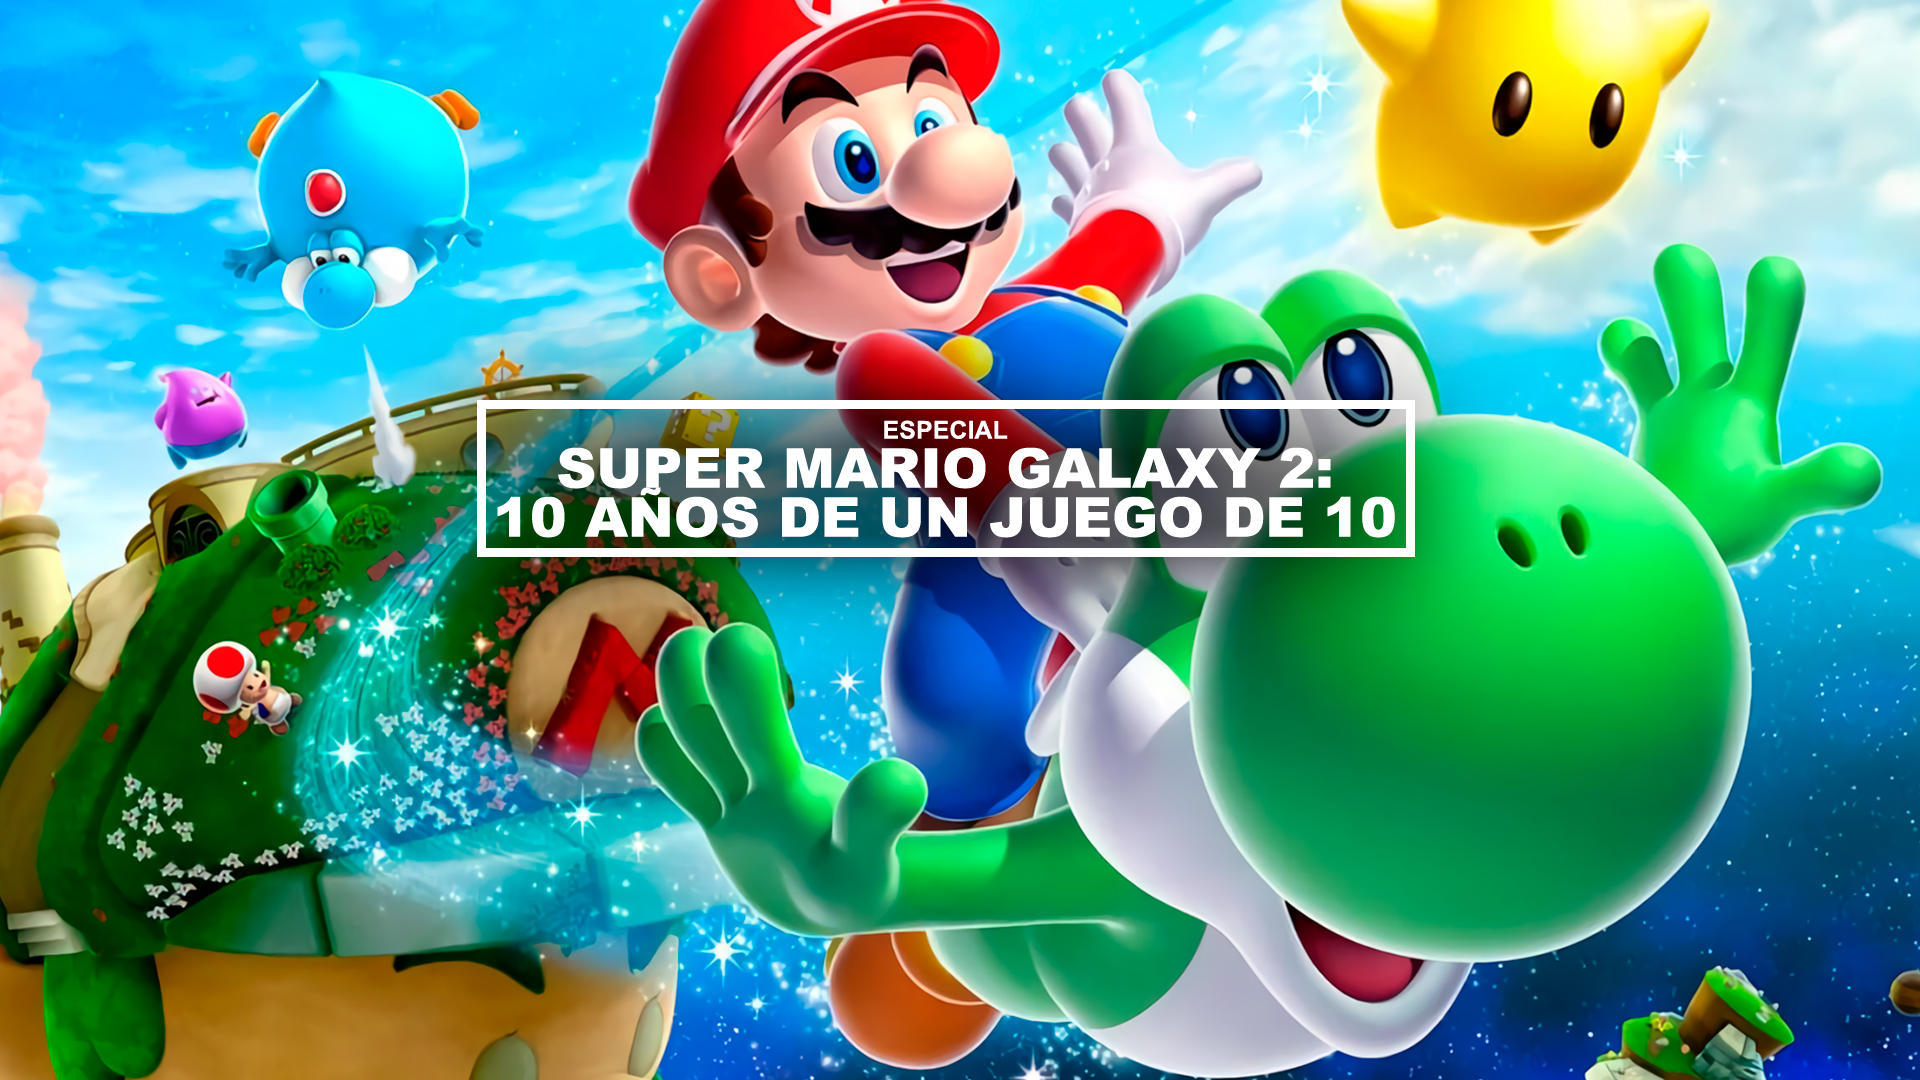 Super Mario Galaxy 2: 10 aos de un juego de 10